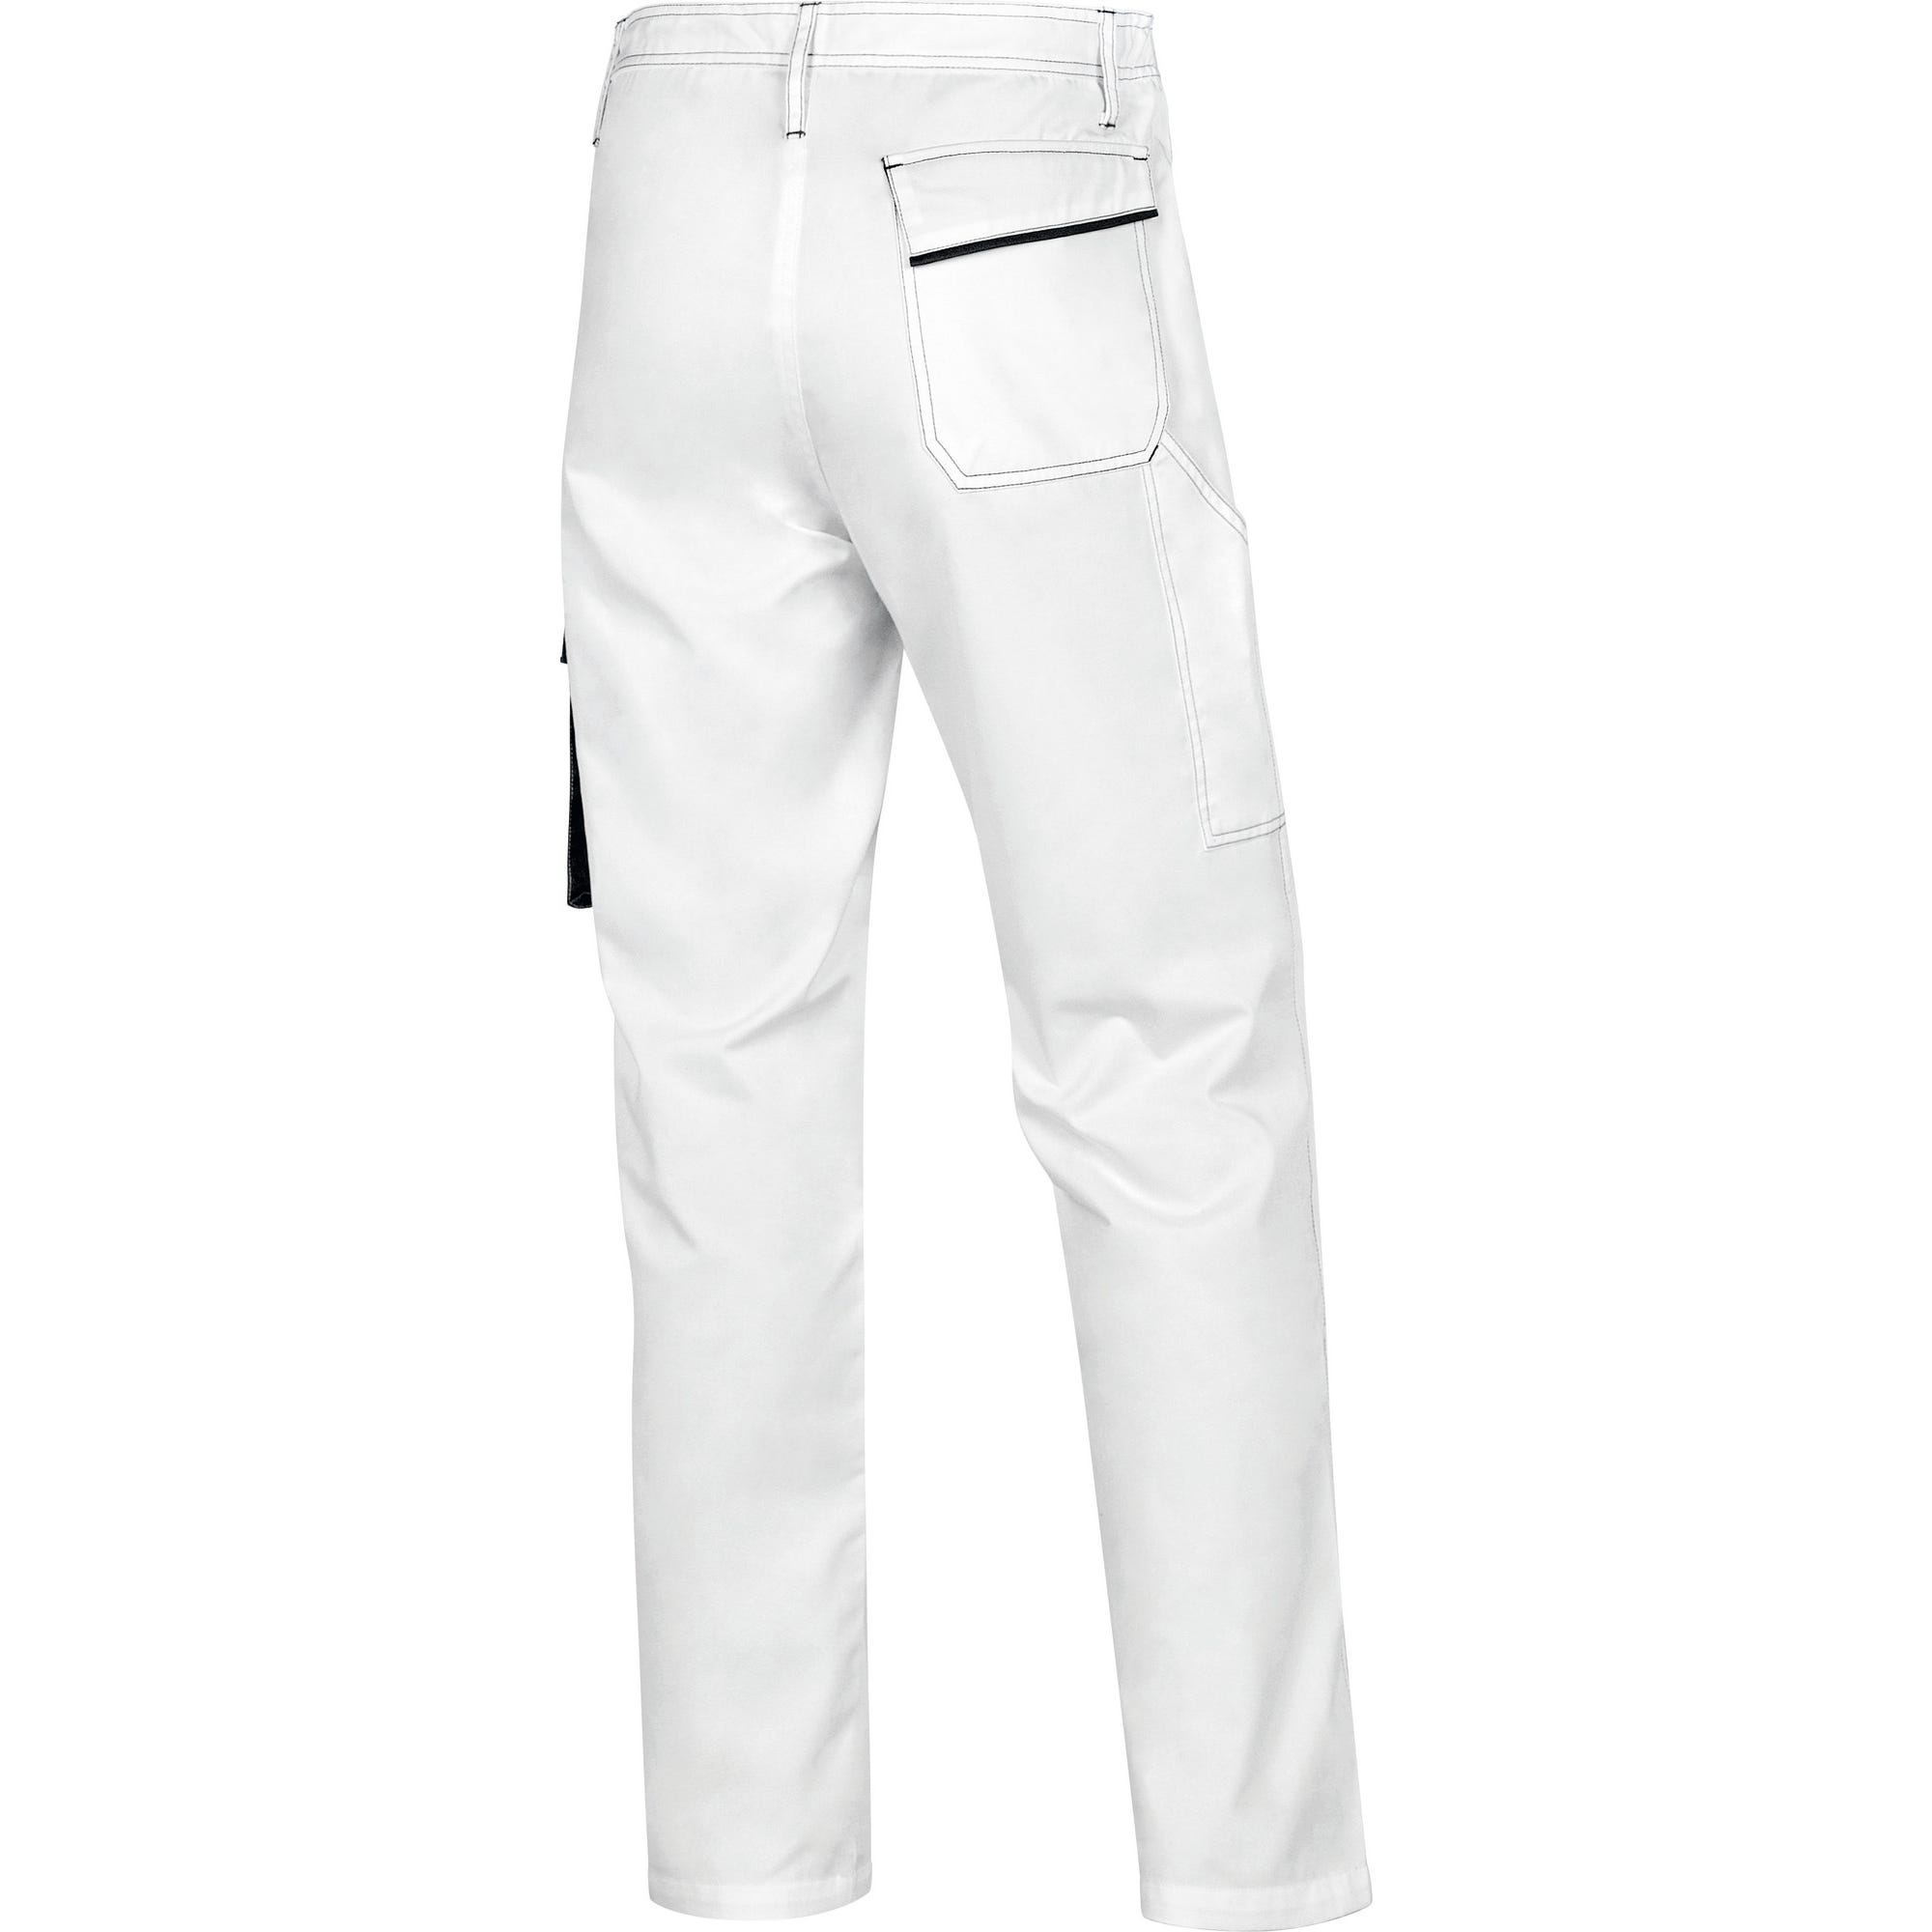 Pantalon de travail blanc/gris T.M PANOSTYLE - DELTA PLUS 1